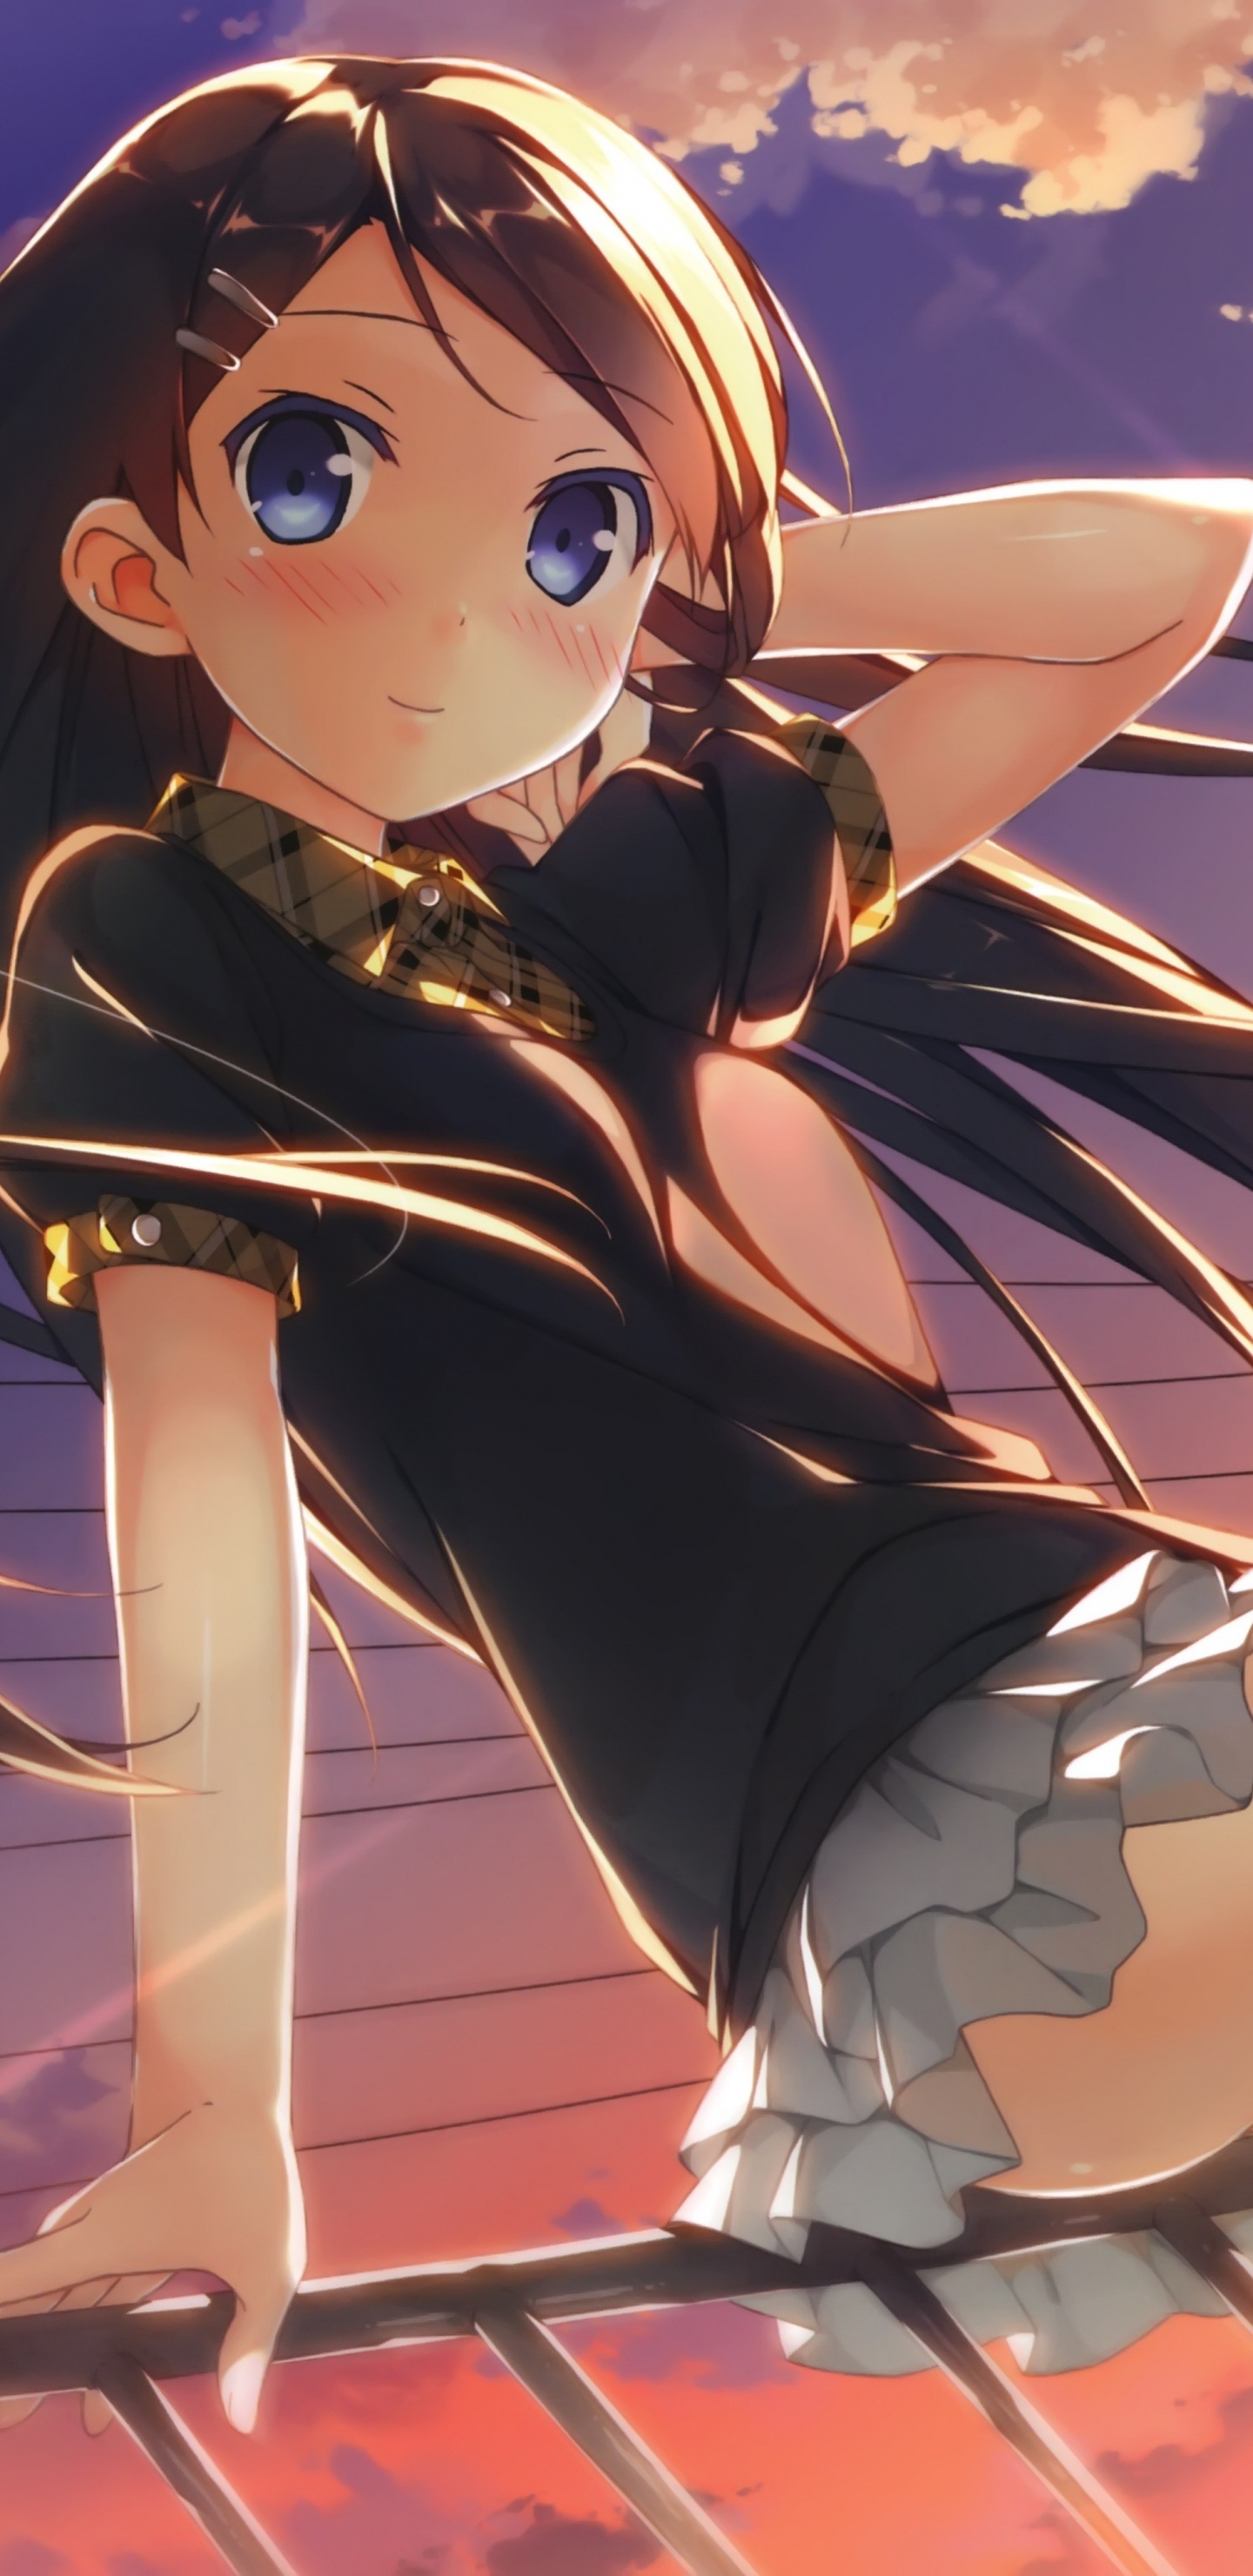 Mädchen in Schwarz-weißer Schuluniform Anime-Charakter. Wallpaper in 1440x2960 Resolution